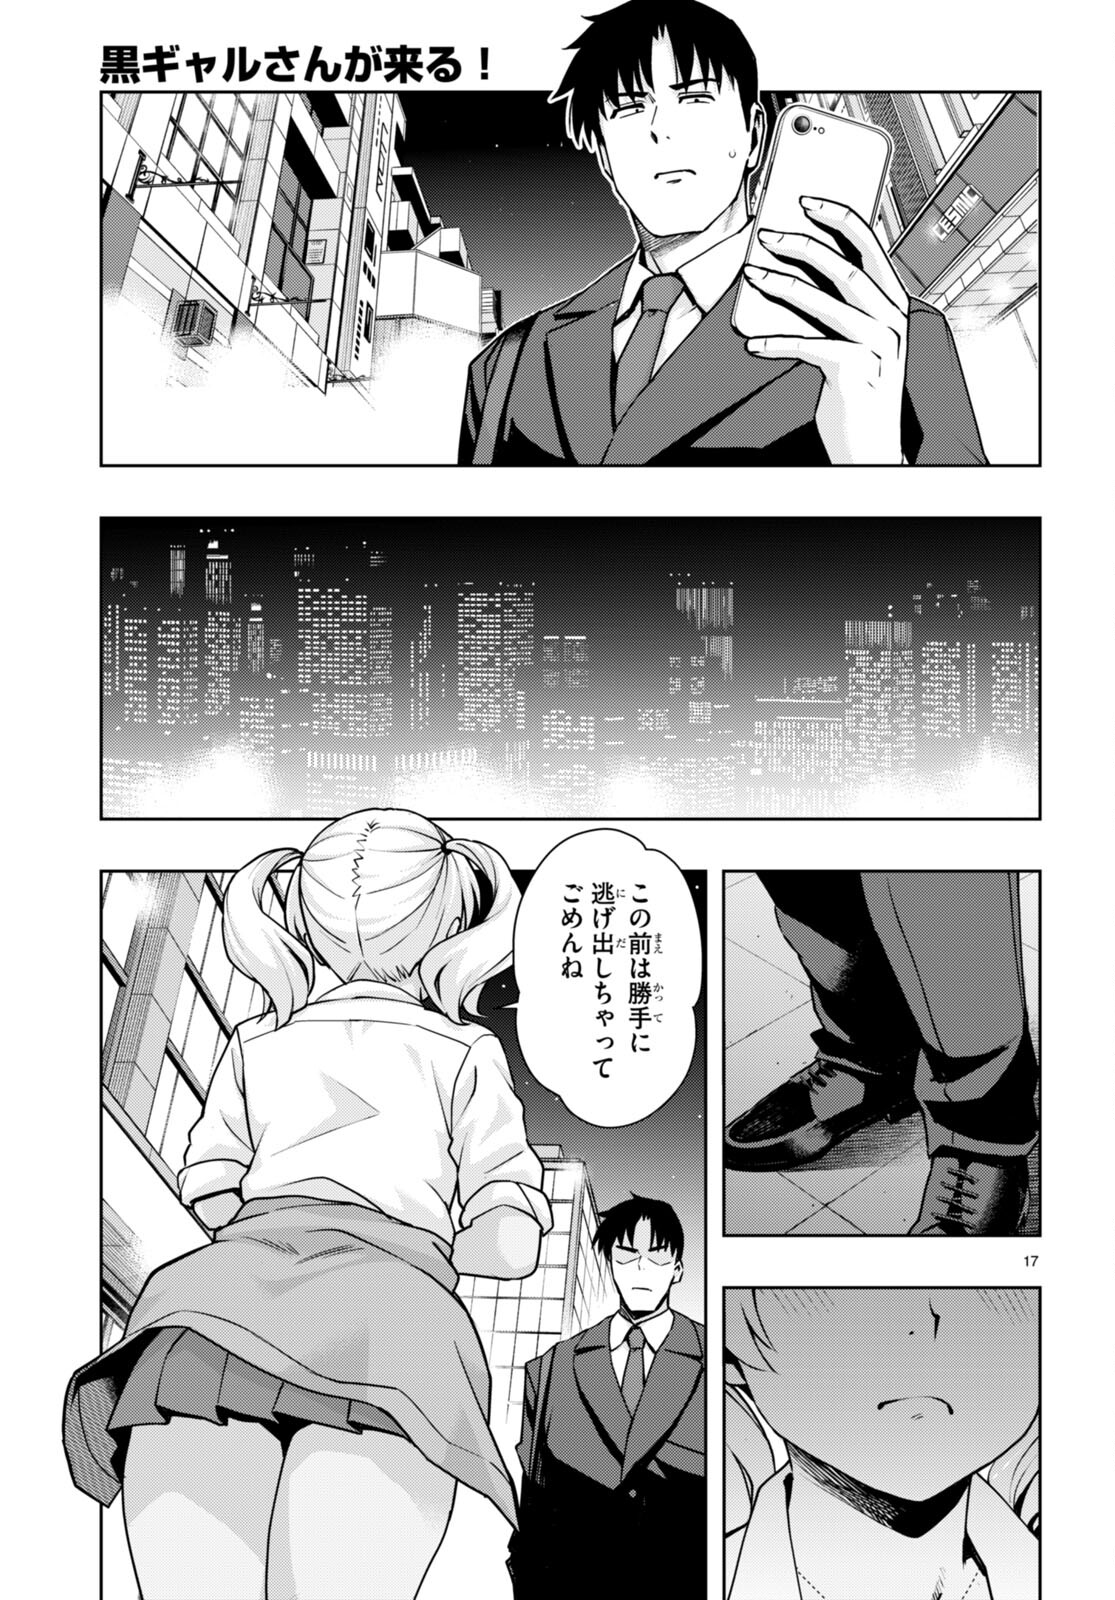 Kuro Gyaru-san ga Kuru! - Chapter 43 - Page 17